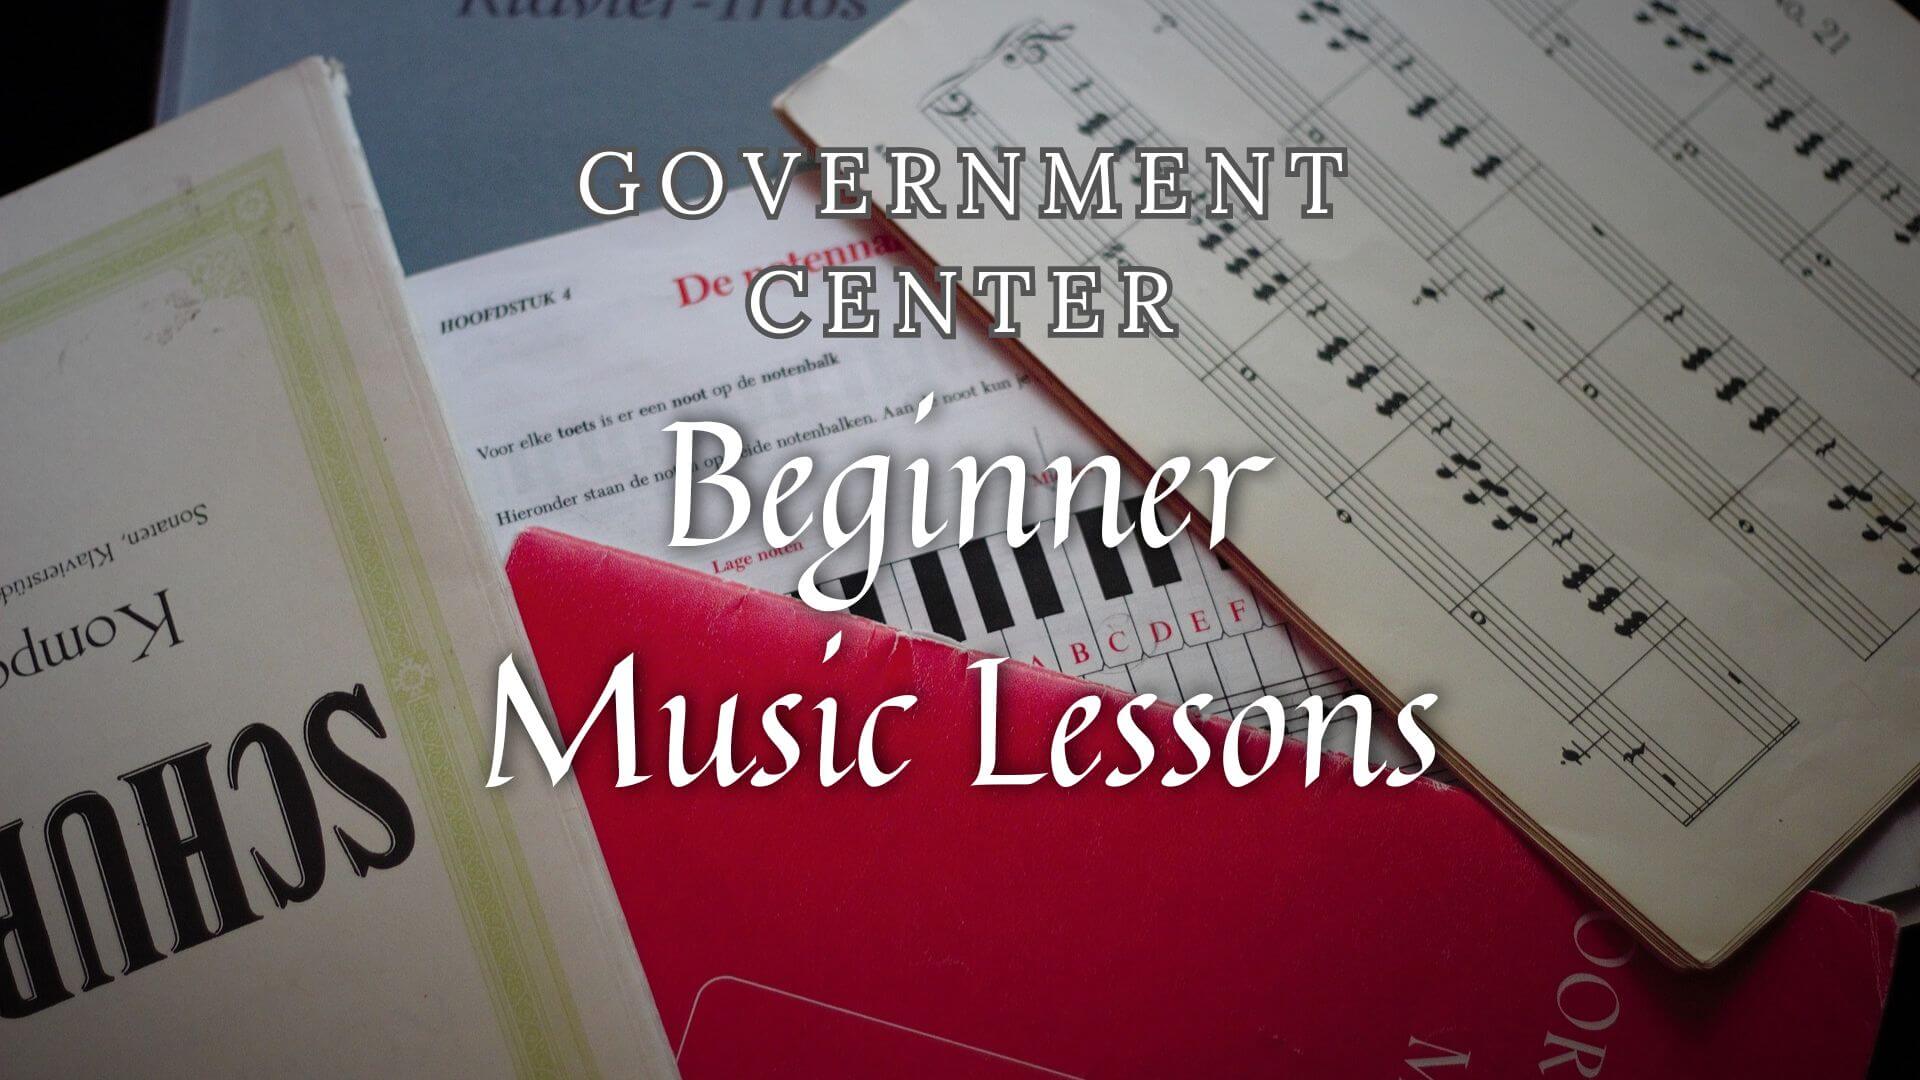 Beginner-Friendly Music Classes for Novices in Government Center, Massachusetts